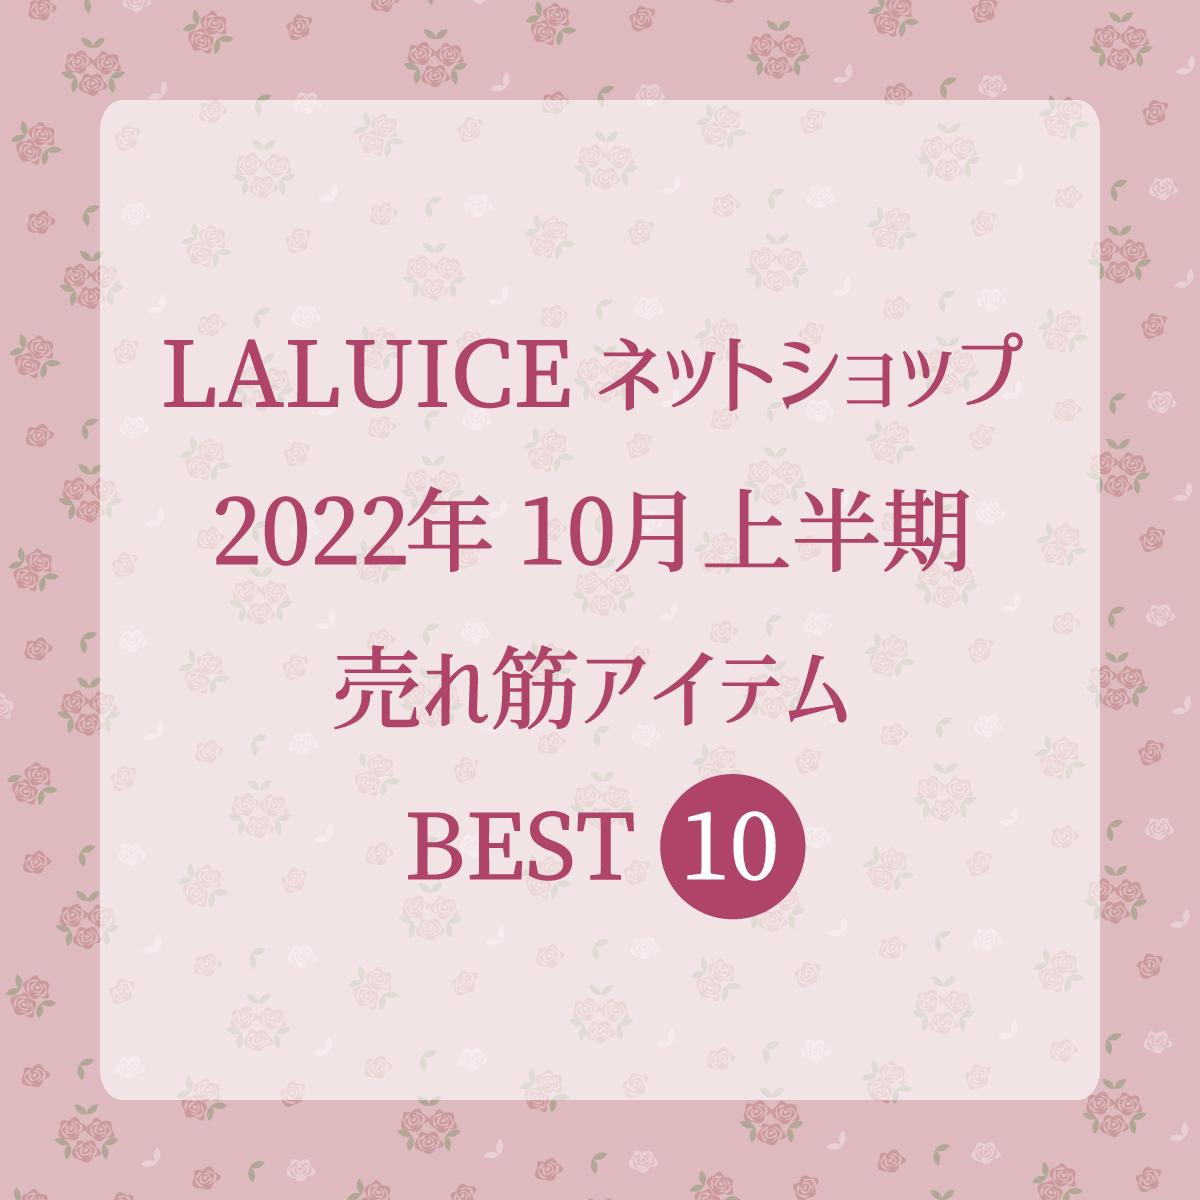 2022年10月上半期(10/1～10/15) LALUICEネットショップ売れ筋アイテム BEST10